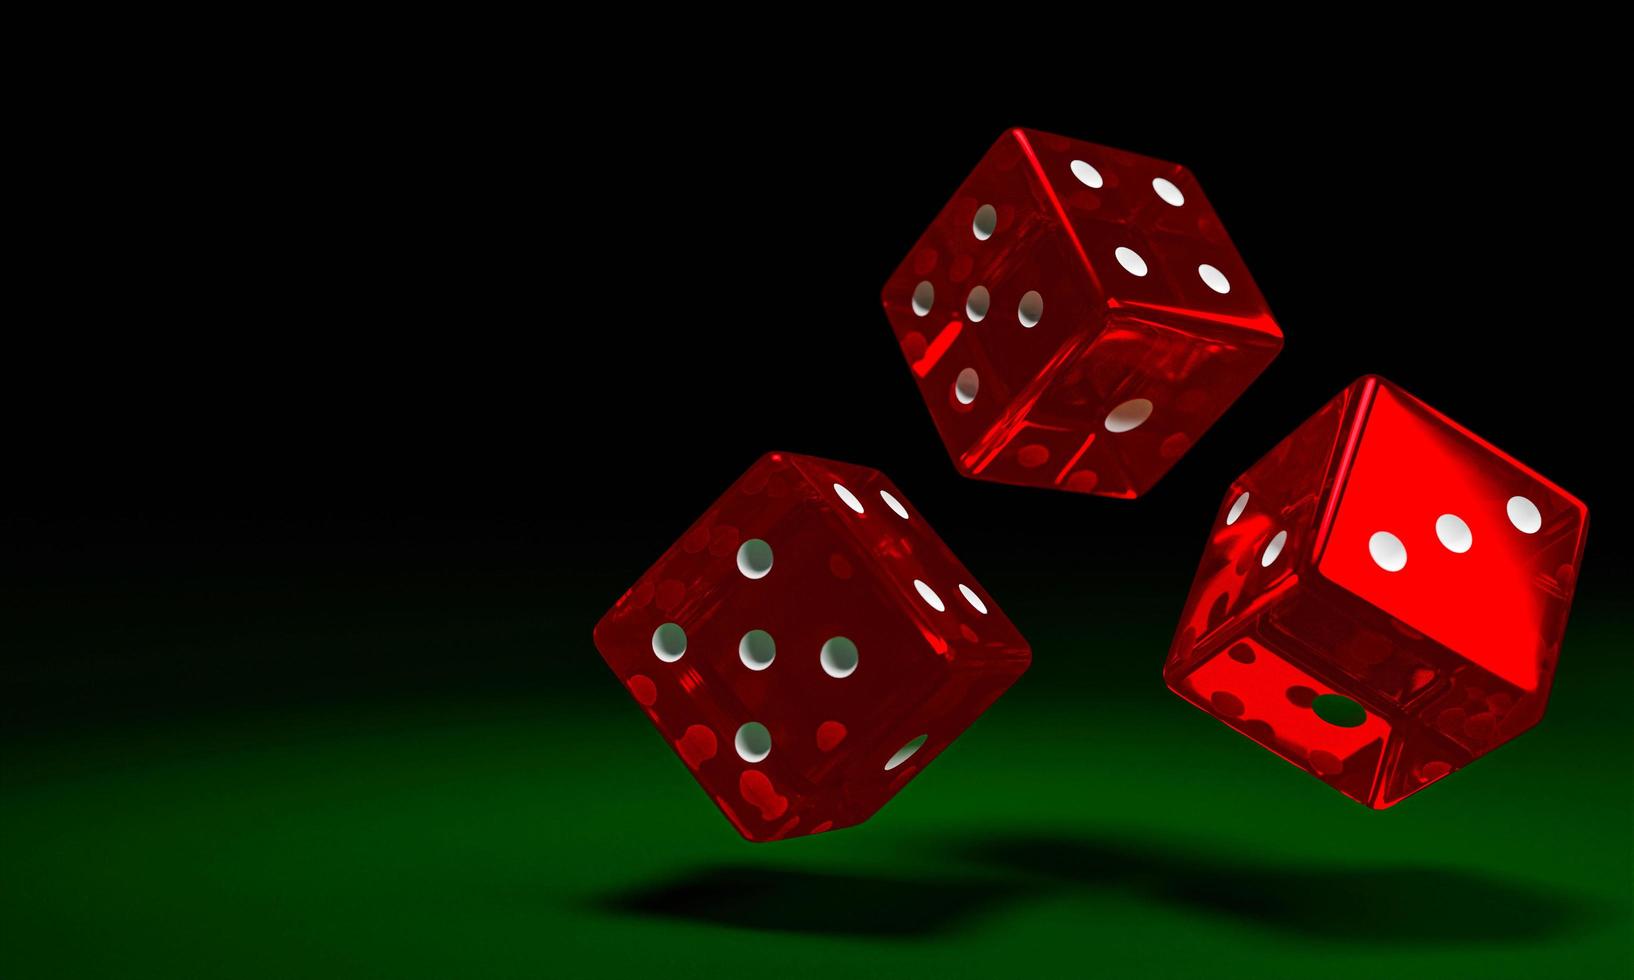 transparante rode dobbelstenen vallen op de groene vilten tafel. het concept van dobbelstenen gokken in casino's. 3D-rendering foto